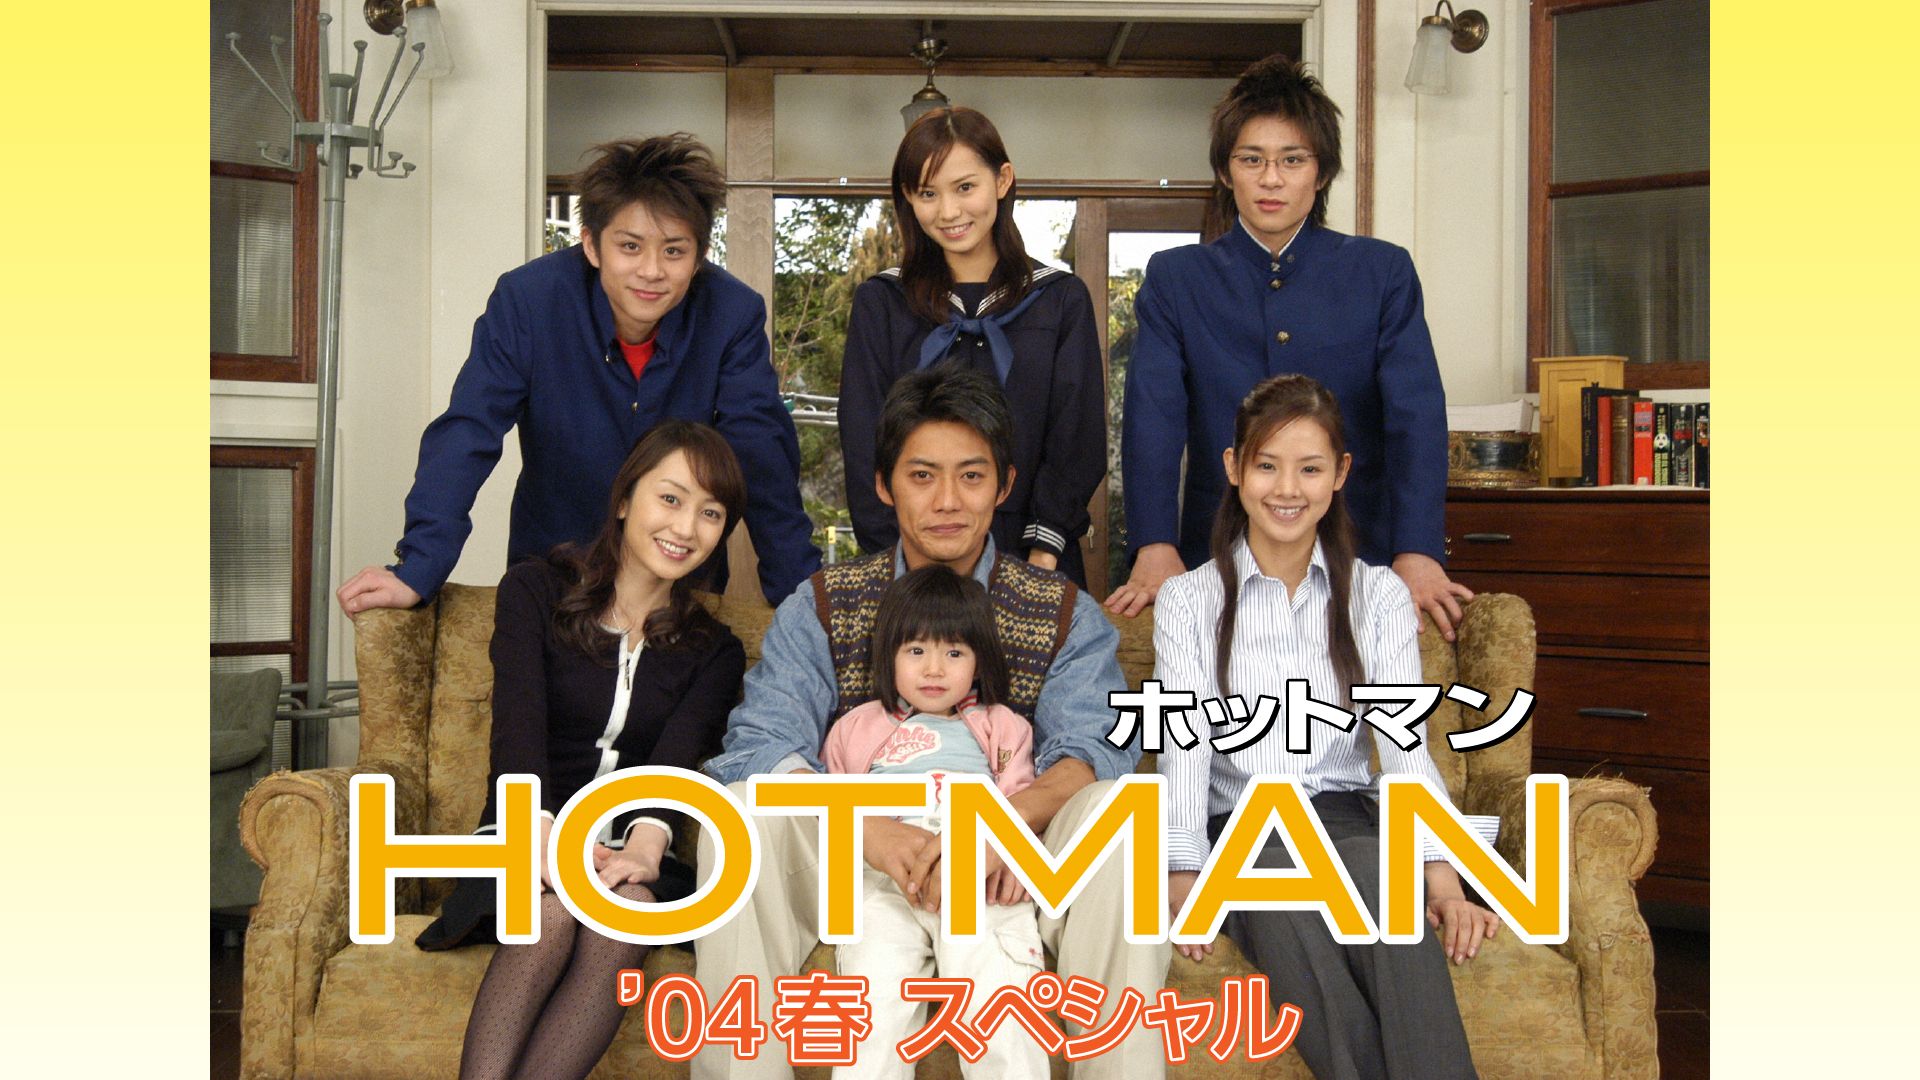 「ホットマン」シリーズ ホットマン’04春スペシャル